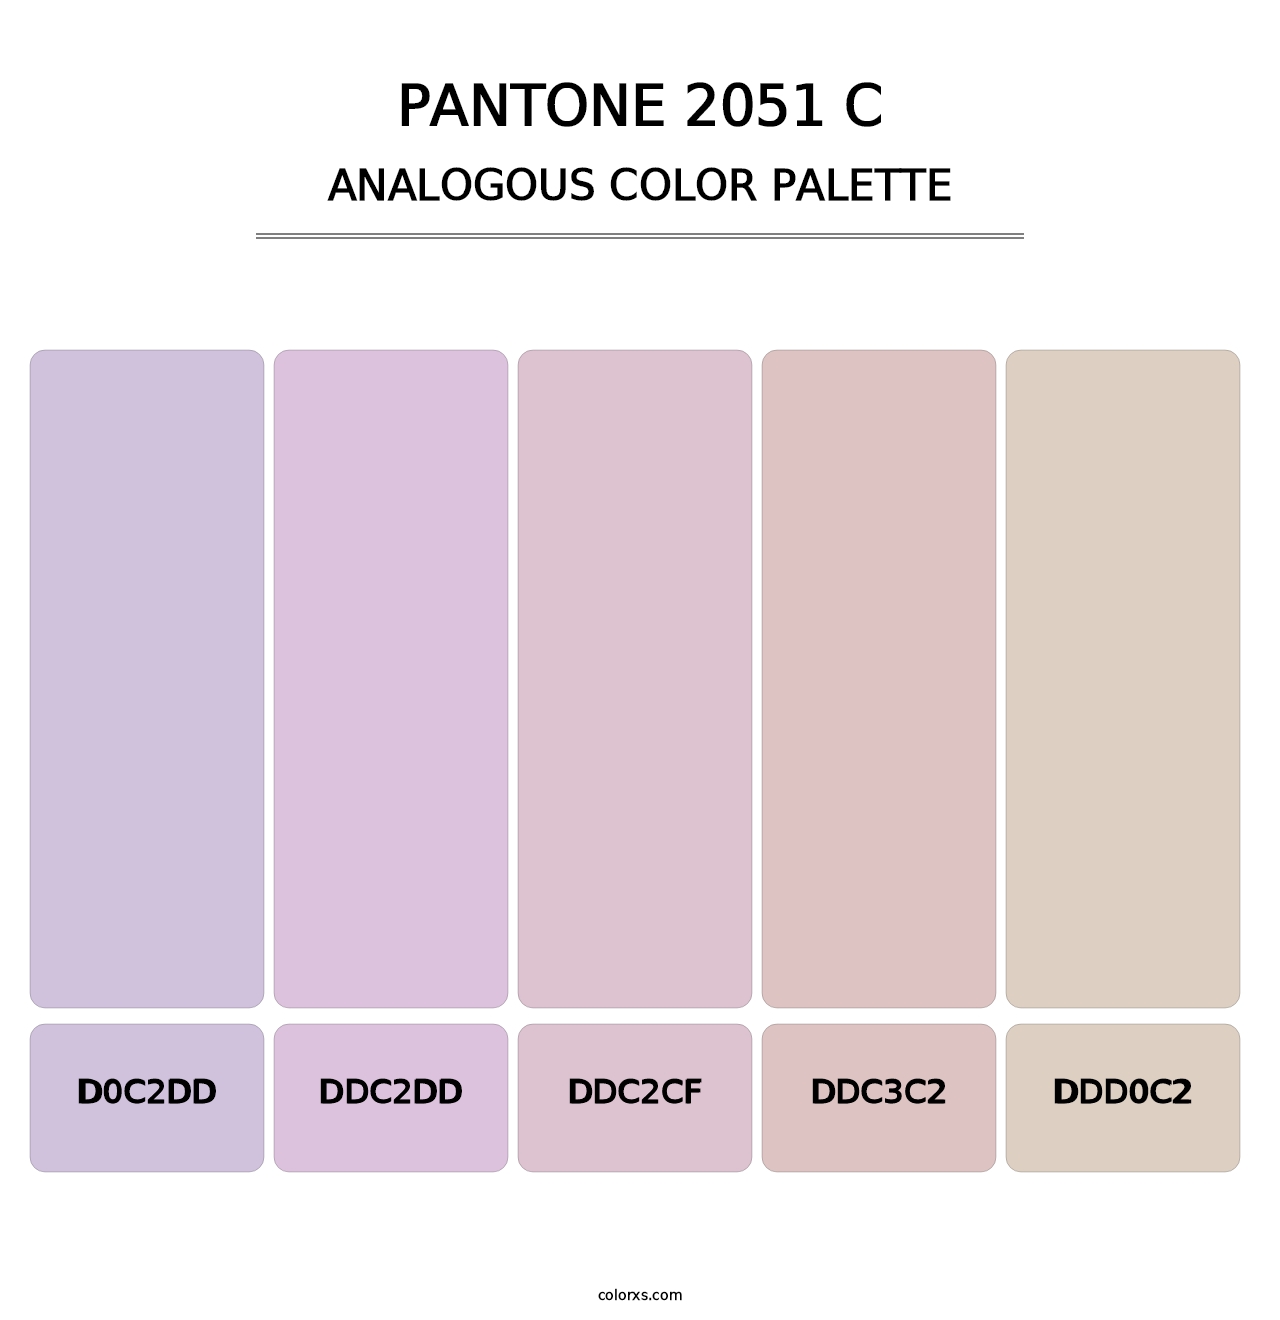 PANTONE 2051 C - Analogous Color Palette